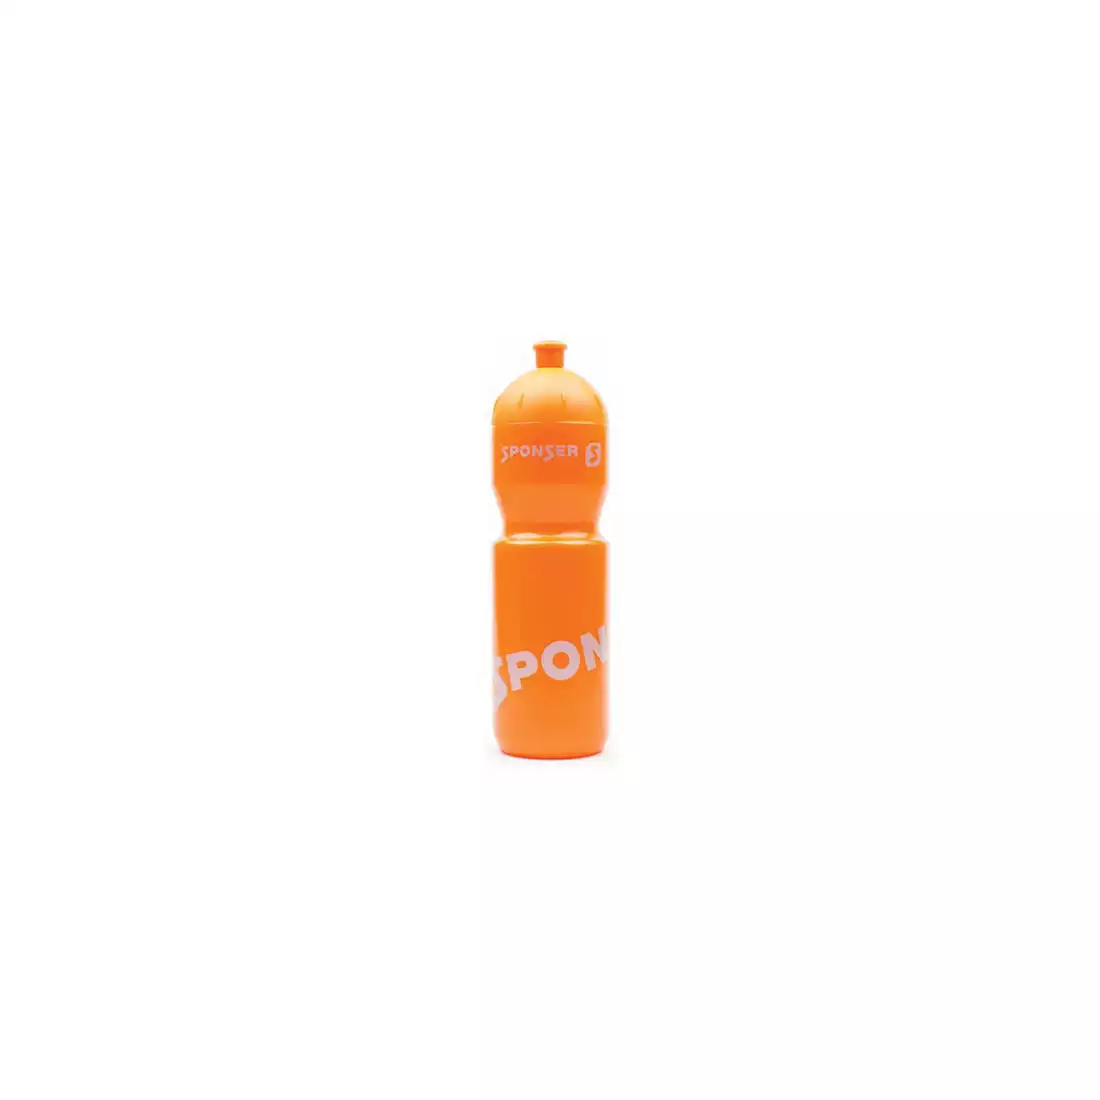 SPONSER NETTO fahrrad wasserflasche 750 ml, orange/silber